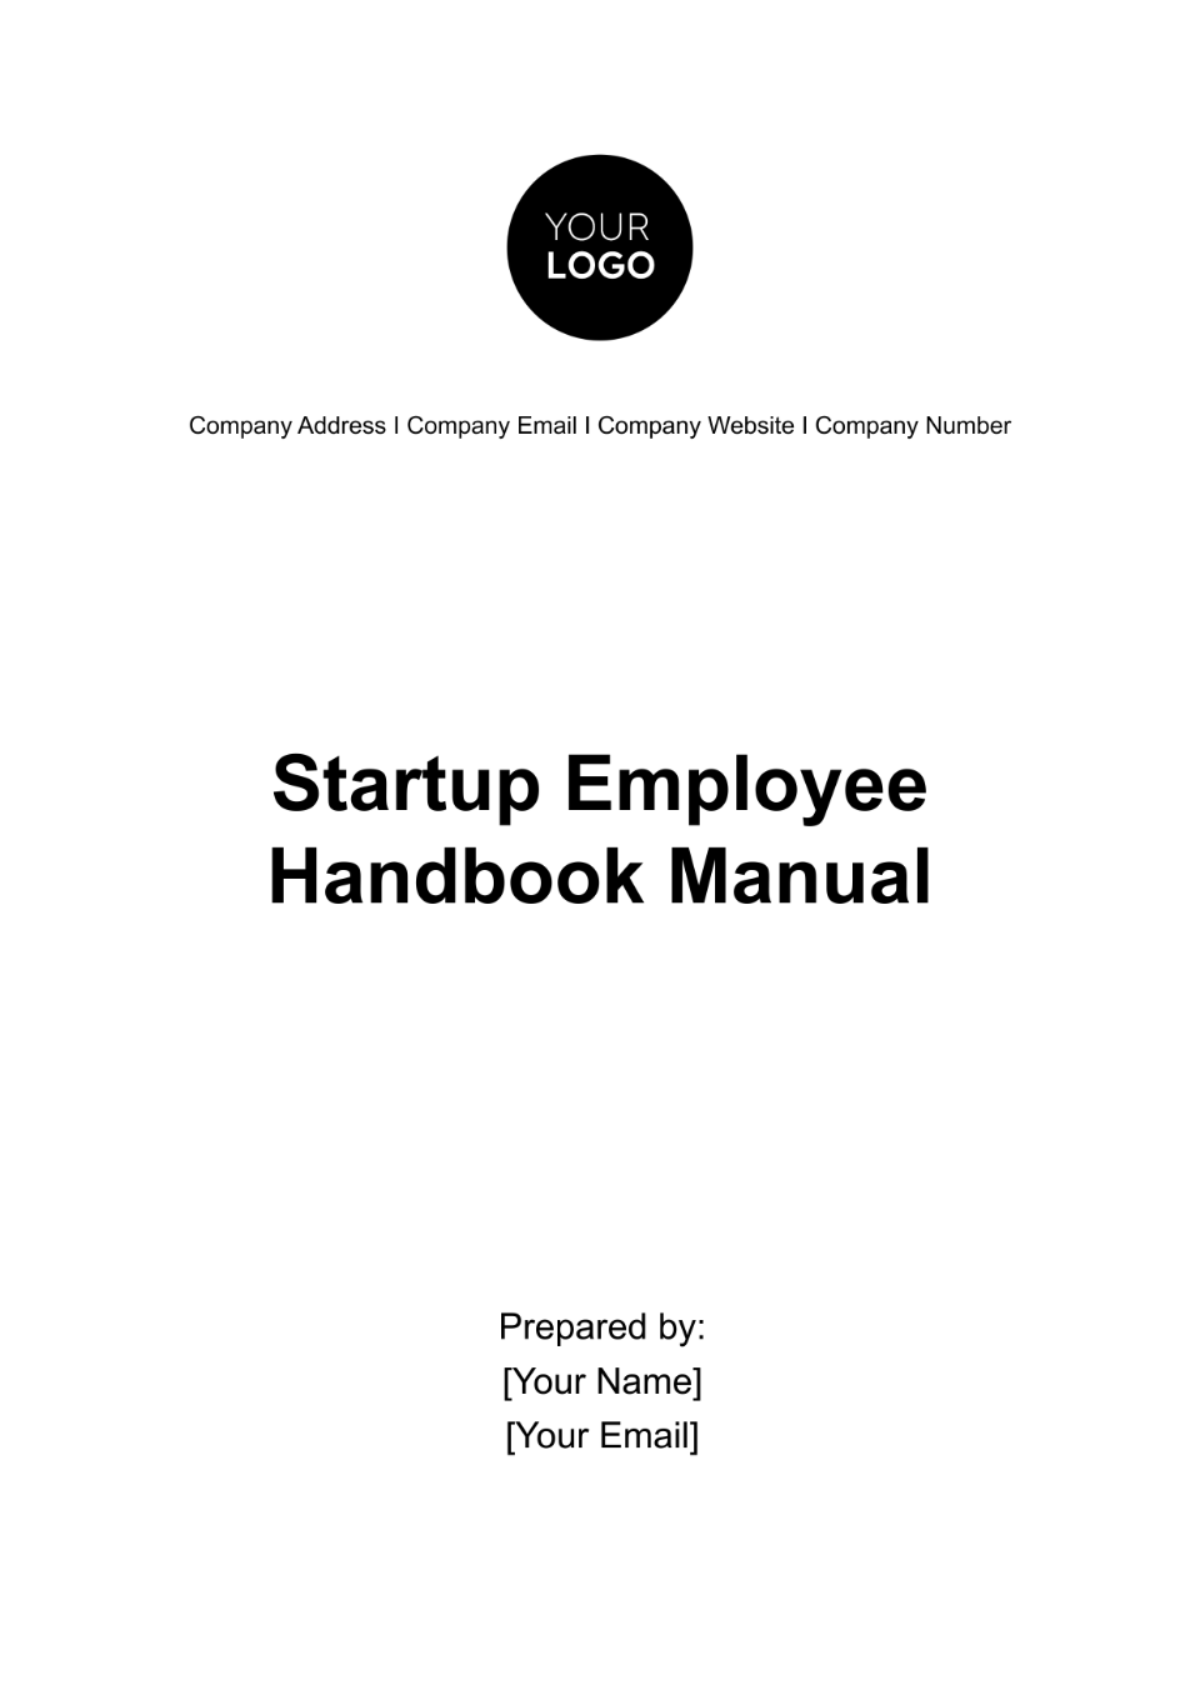 Free Startup Employee Handbook Manual Template